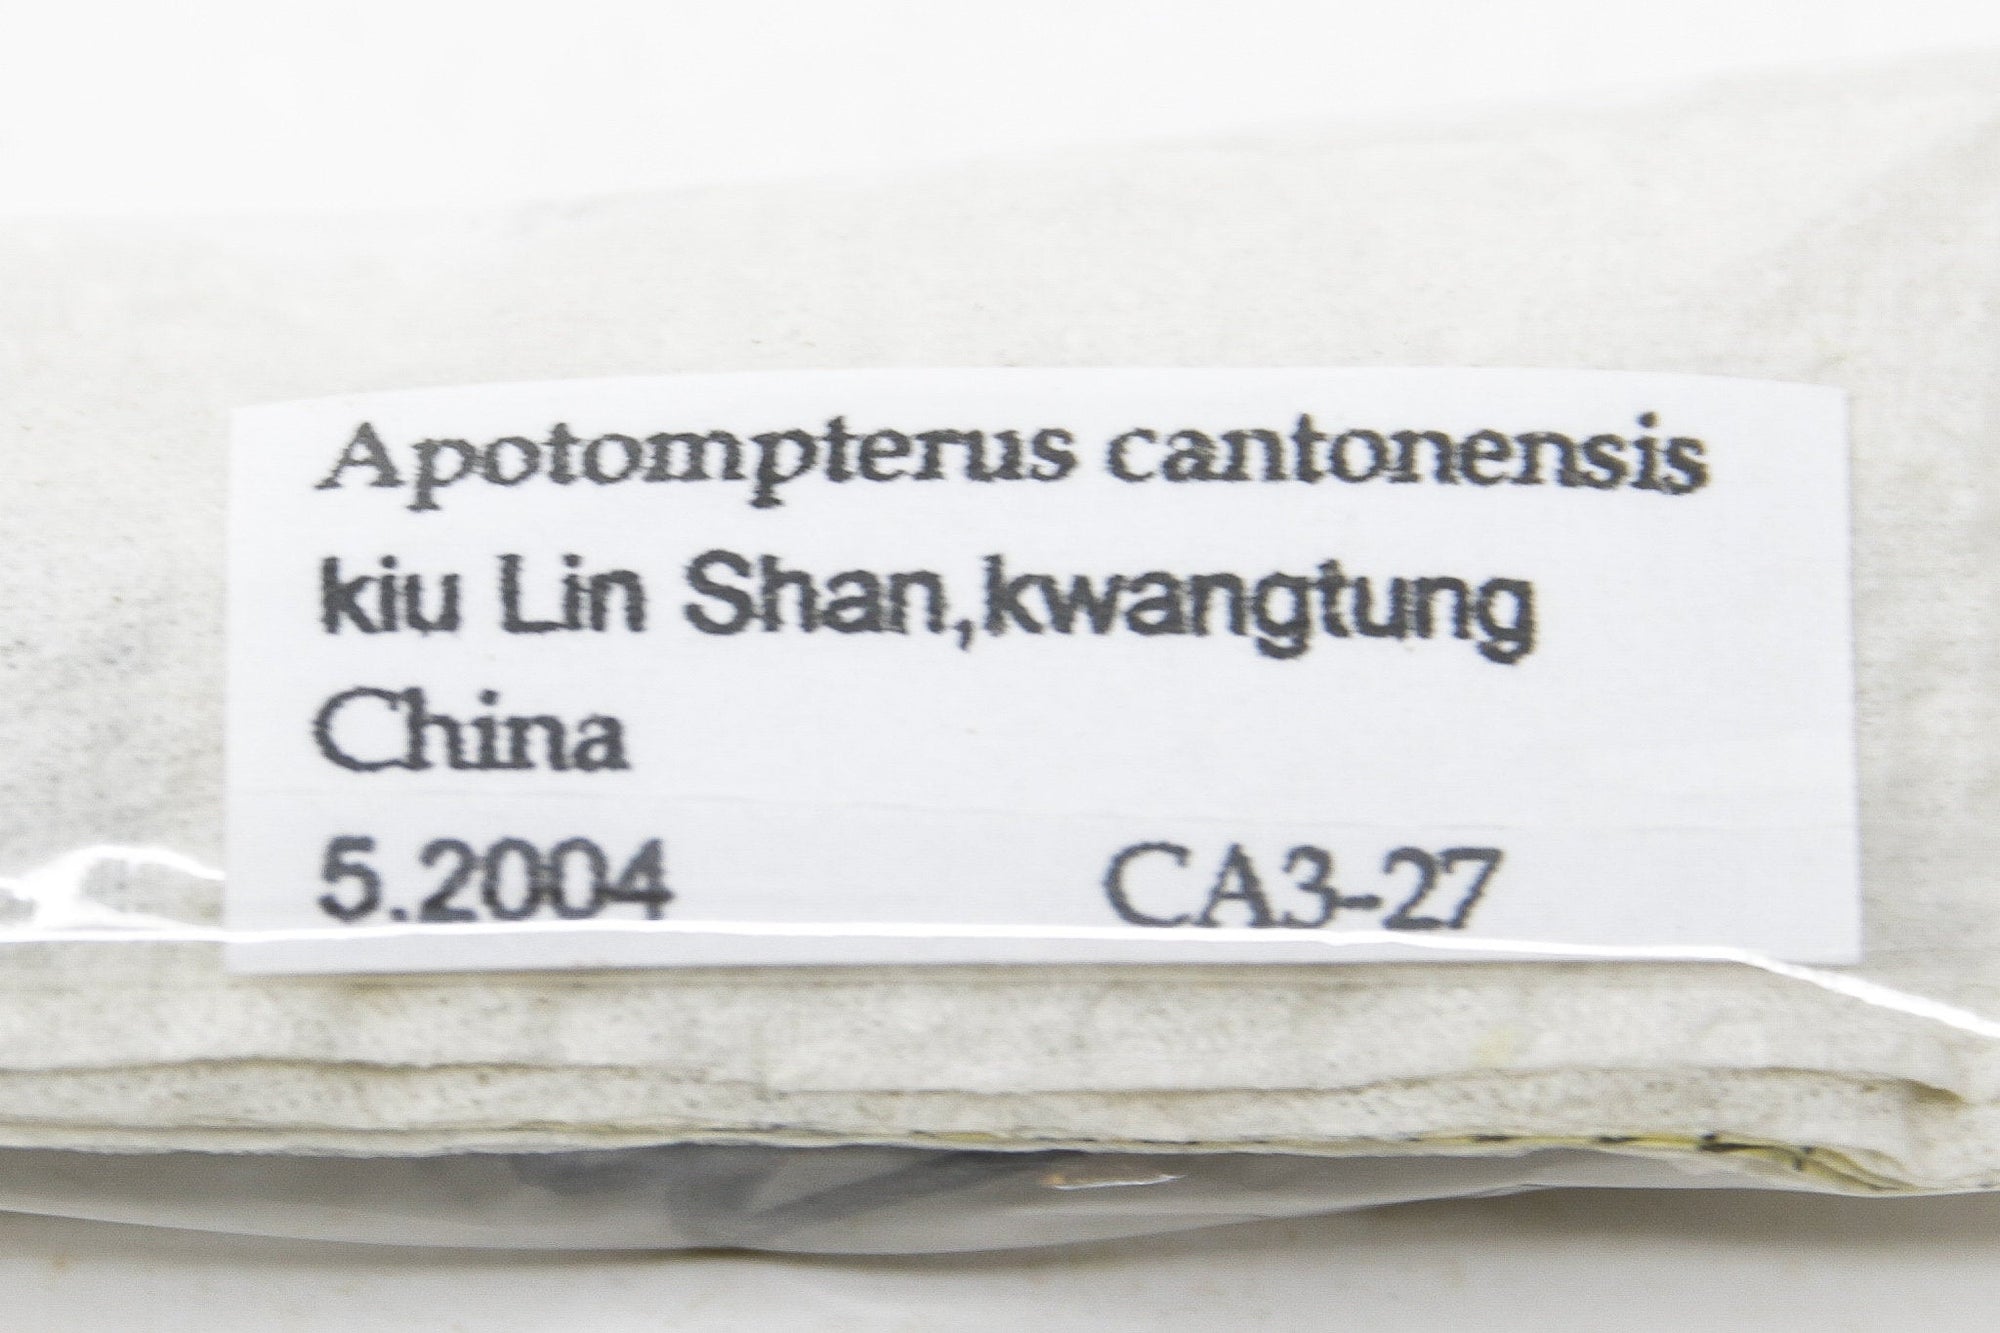 1 x Apotompterus cantonensis | A1 Unmounted Specimen | Including Collection Data